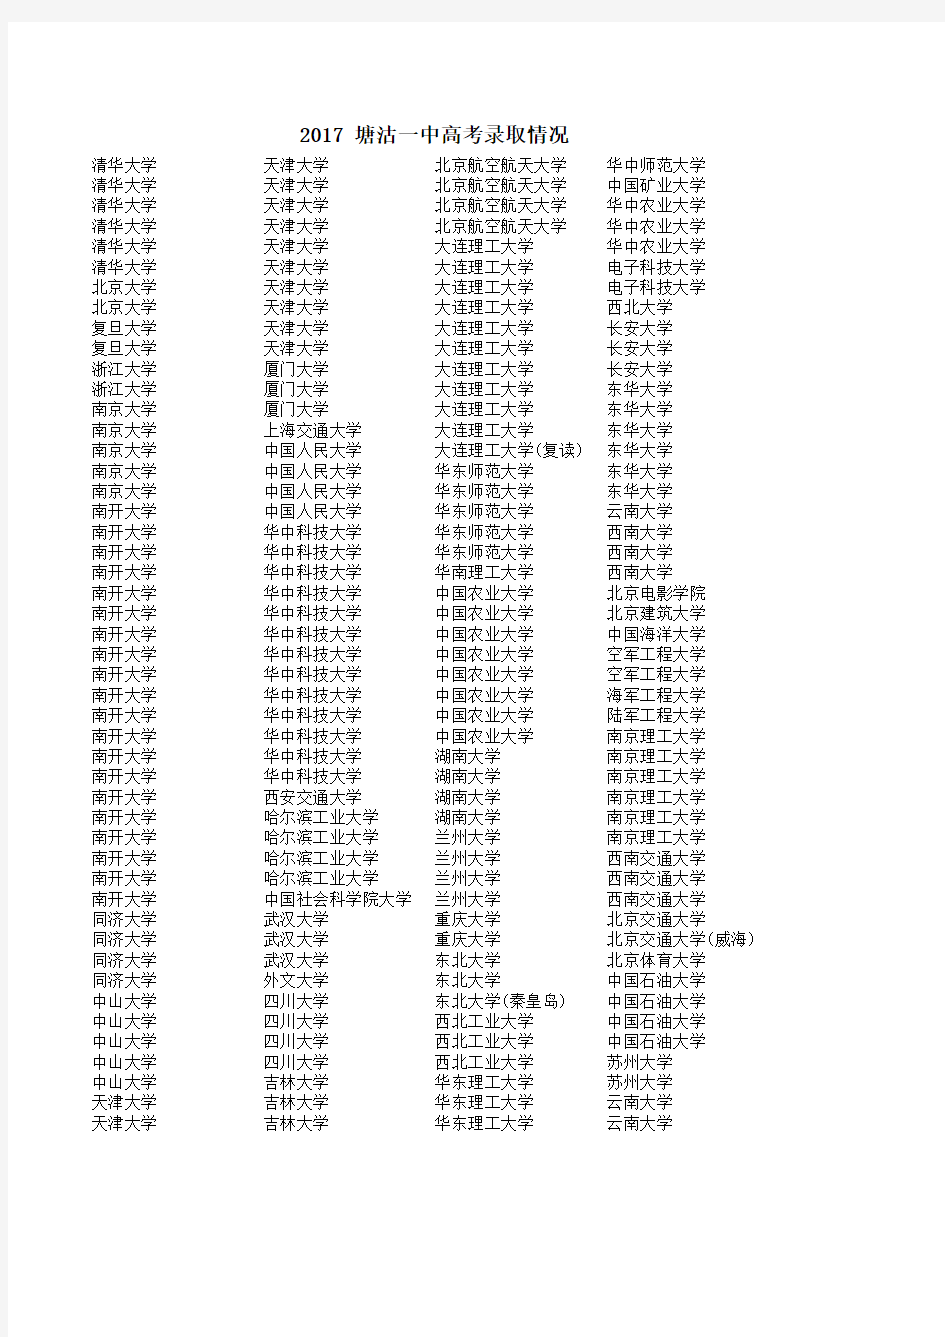 塘沽一中高考录取情况表2016-17